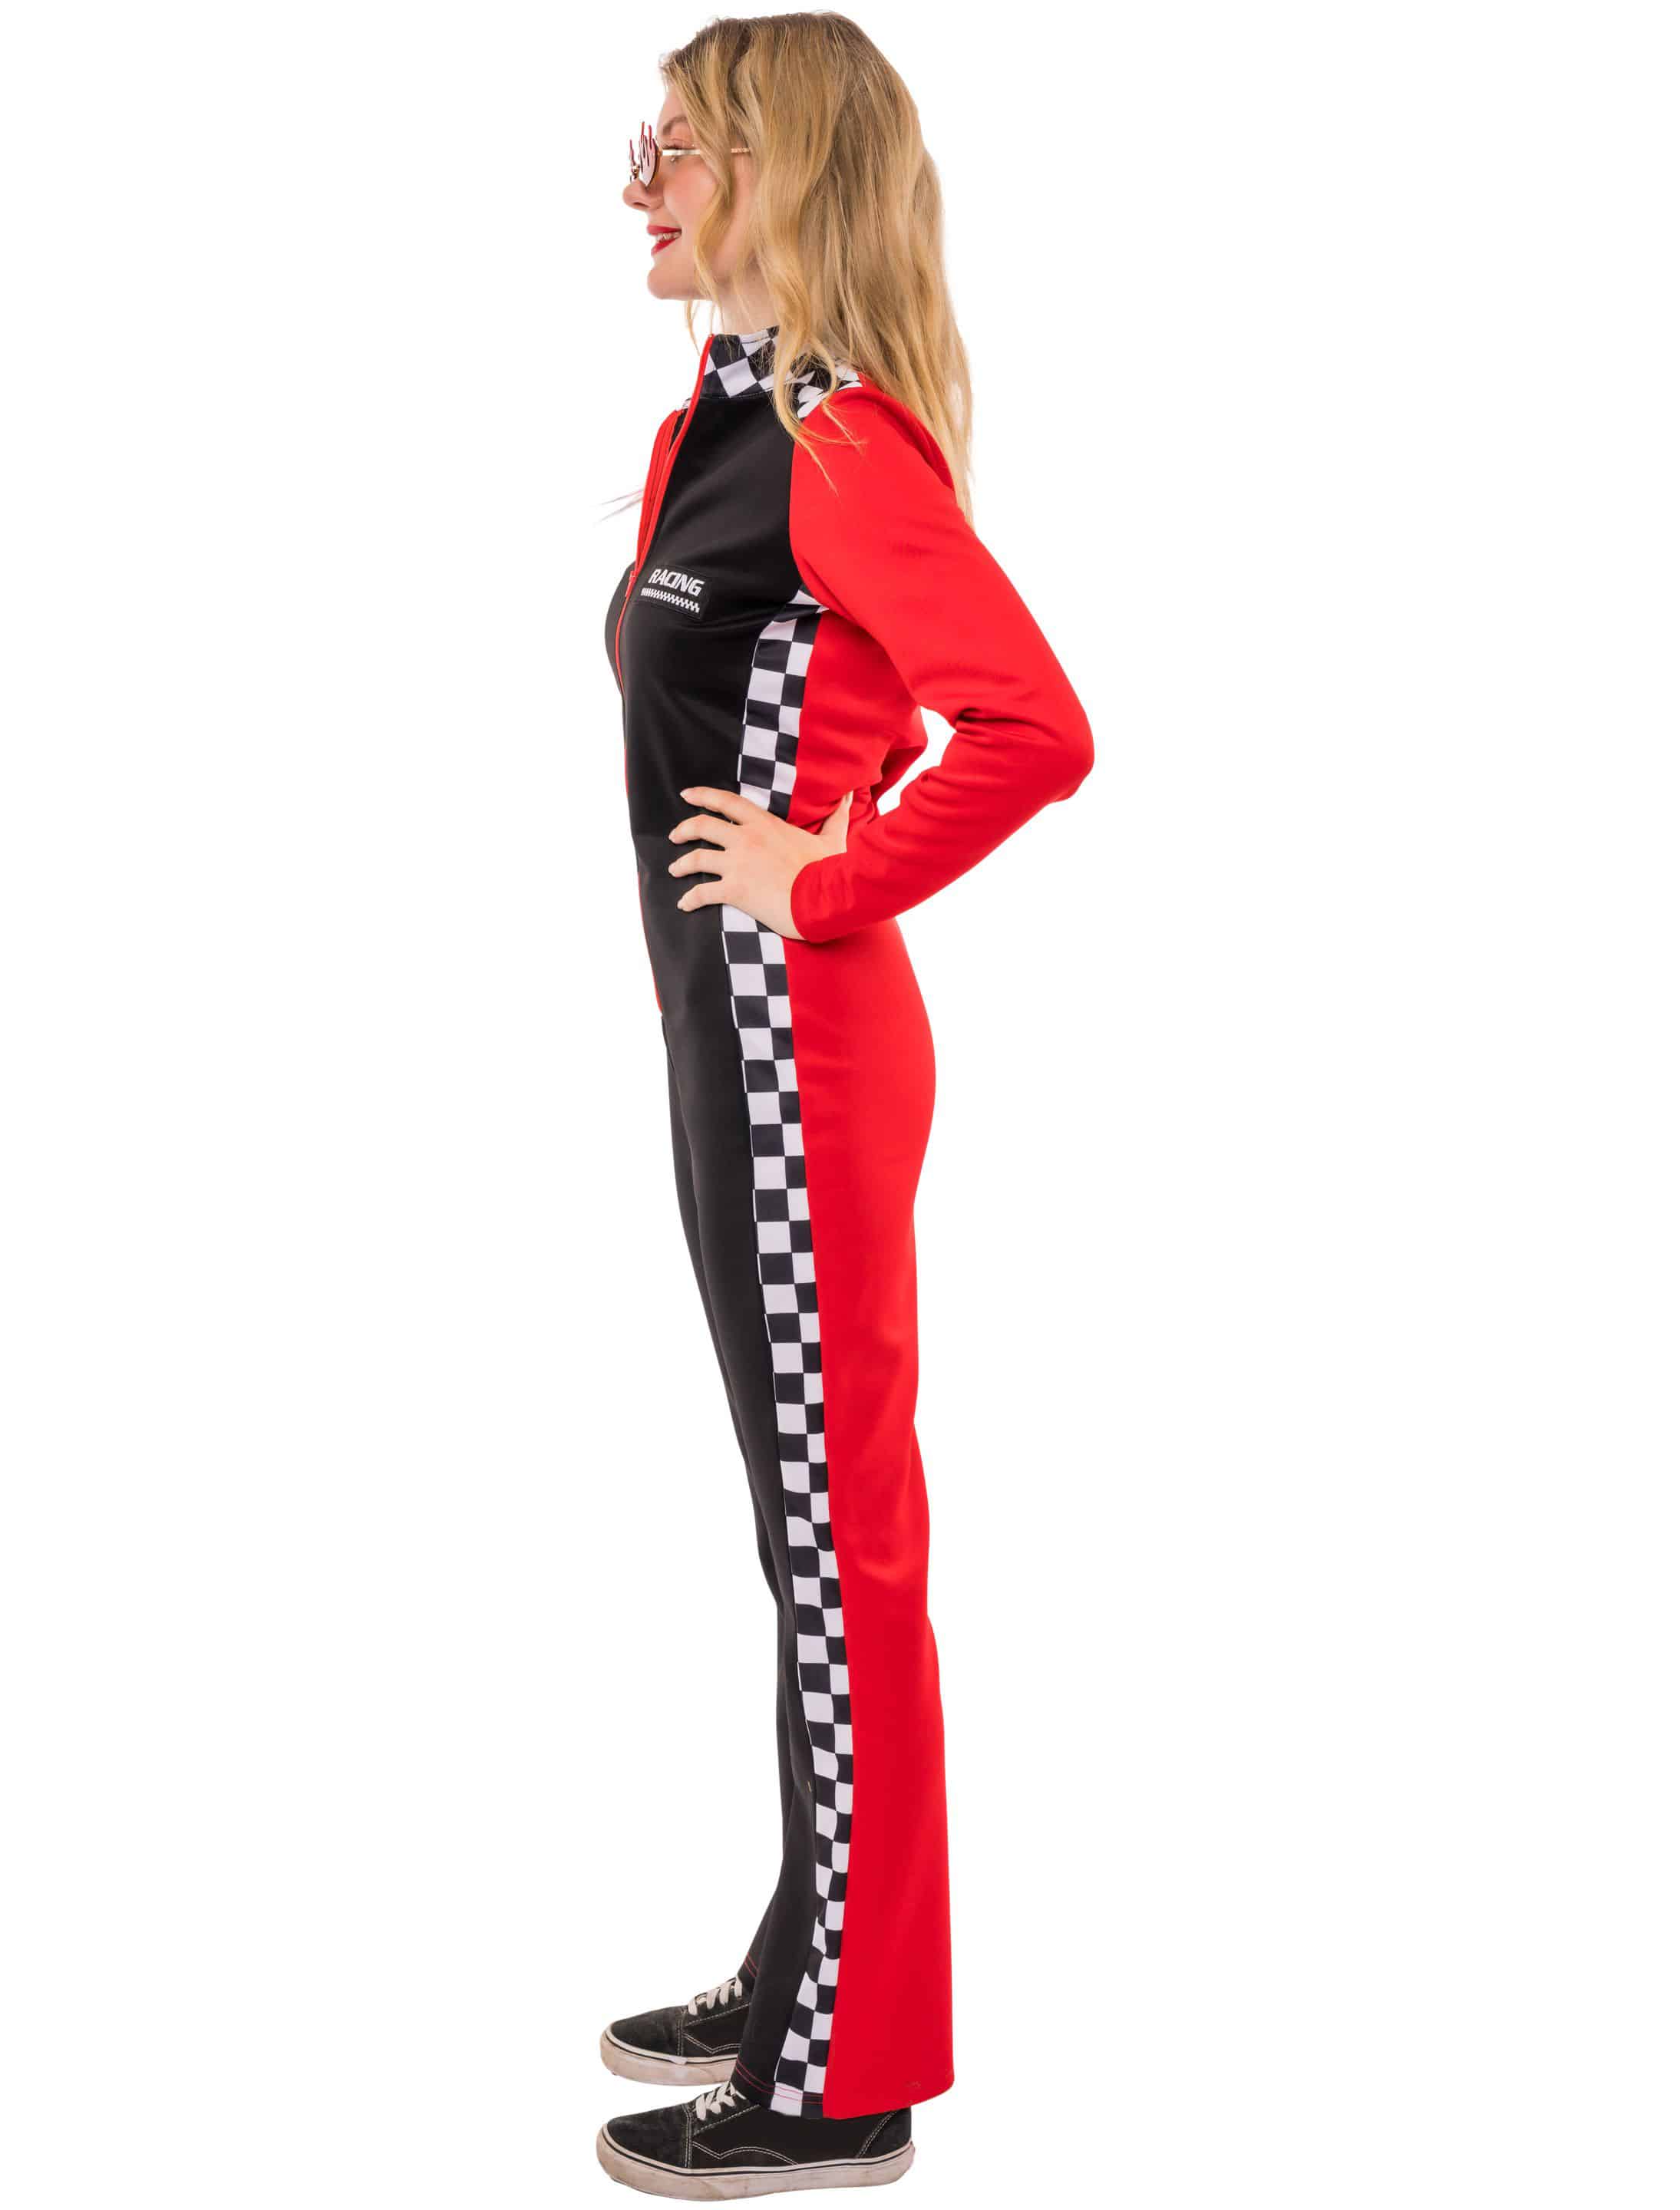 Jumpsuit Rennfahrerin Damen schwarz/rot L/XL